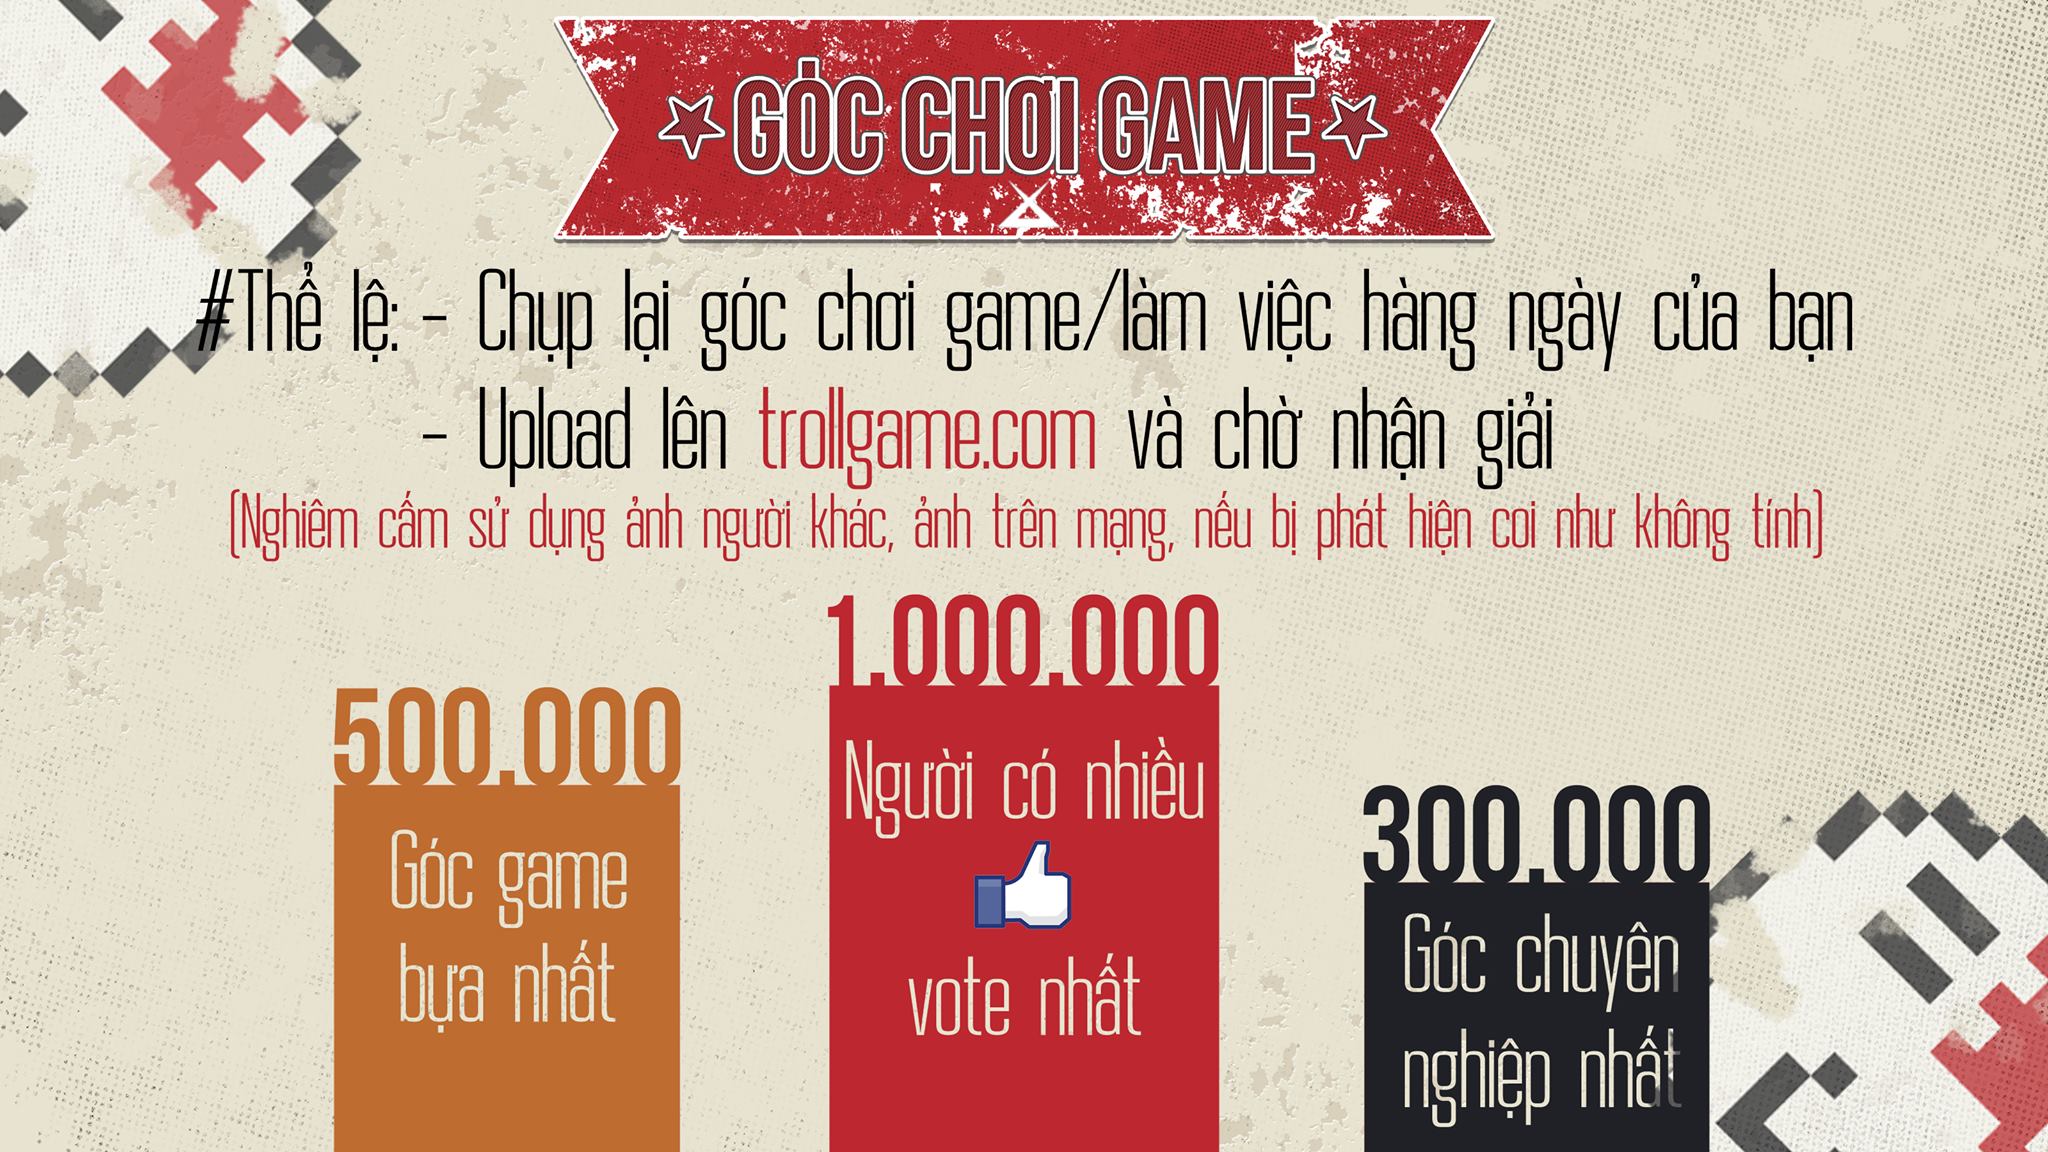 Khoe góc chơi game – bem ngay giải lớn cùng cộng đồng game thủ Việt [HOT]